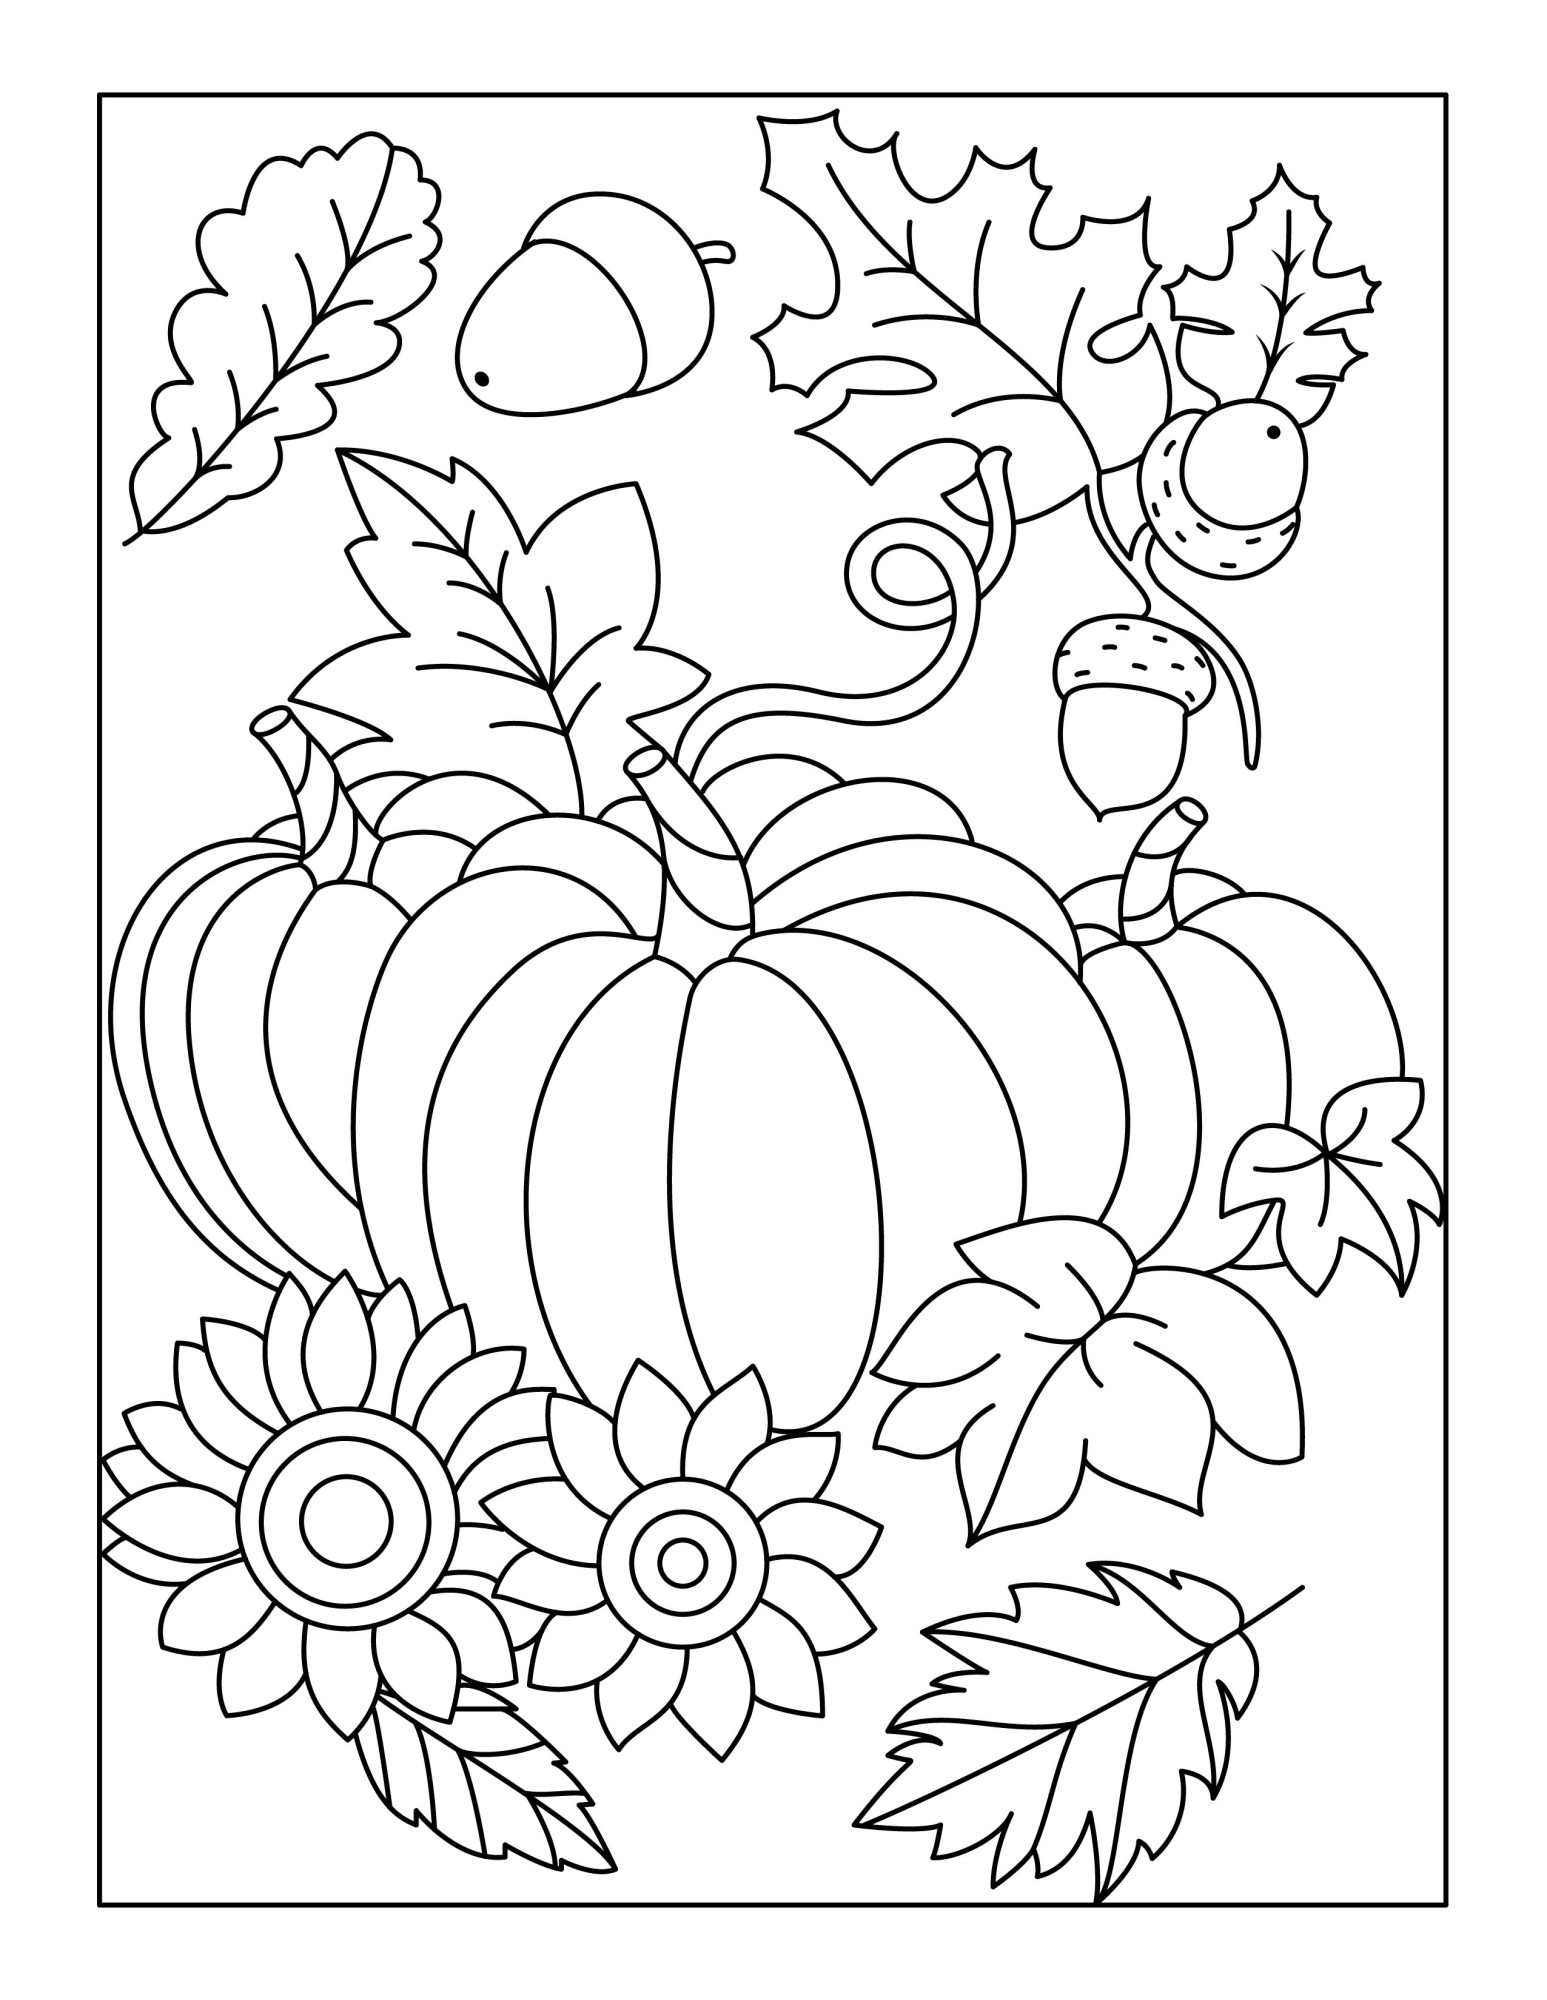 Раскраска для детей: три тыквы на фоне листьев и желудей